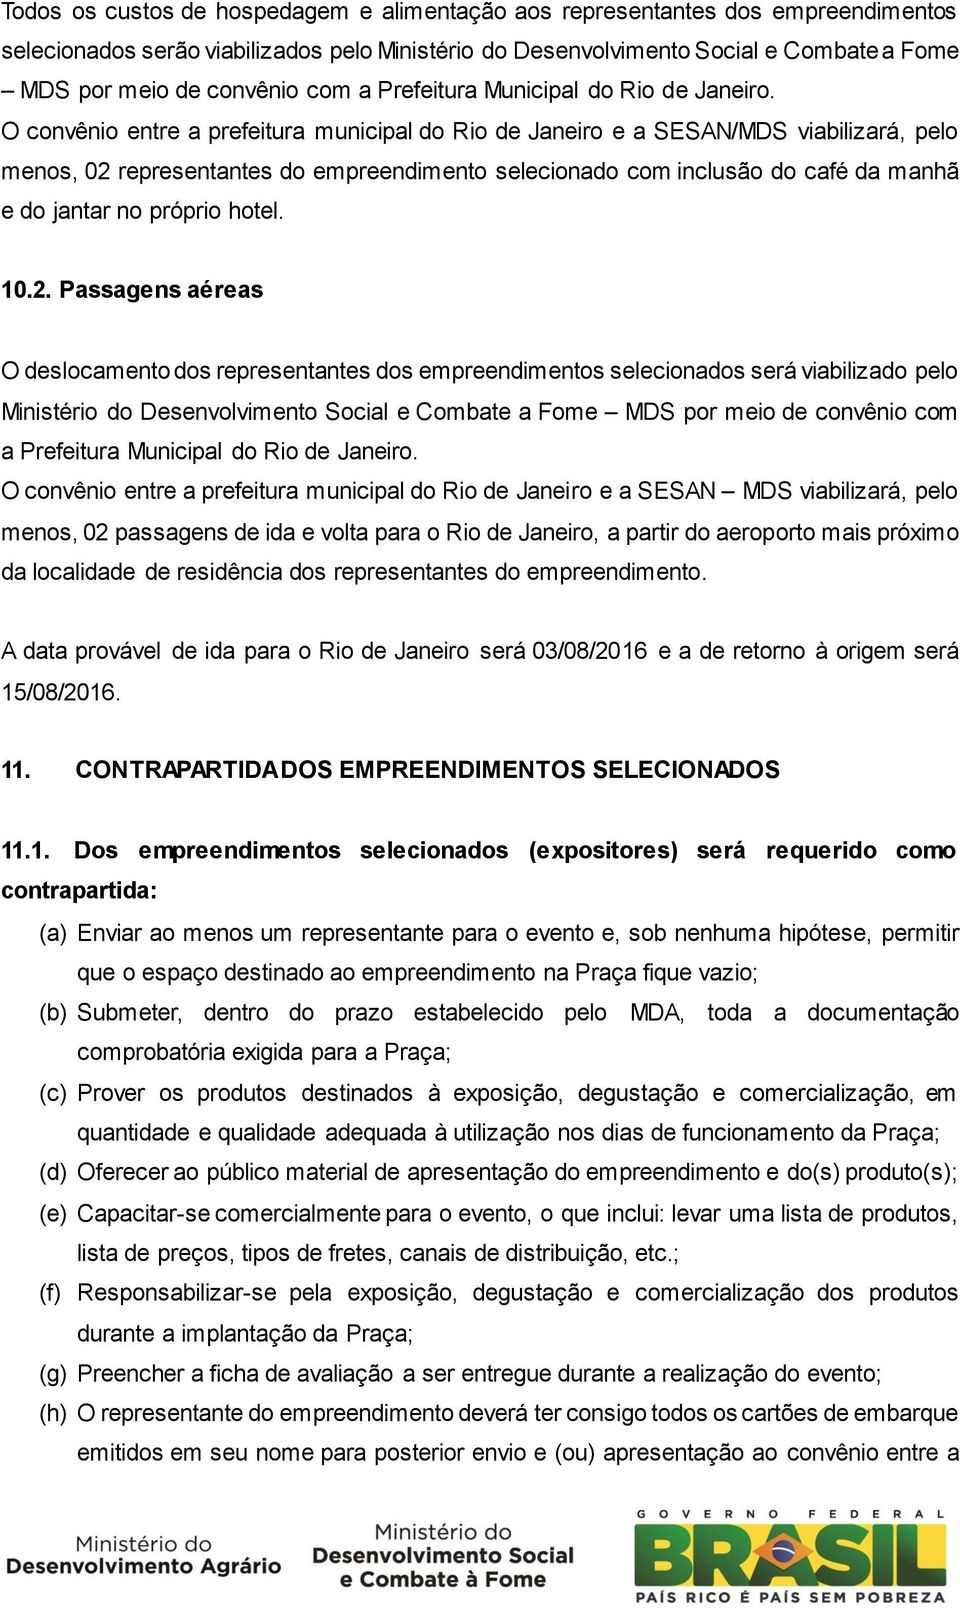 O convênio entre a prefeitura municipal do Rio de Janeiro e a SESAN/MDS viabilizará, pelo menos, 02 representantes do empreendimento selecionado com inclusão do café da manhã e do jantar no próprio